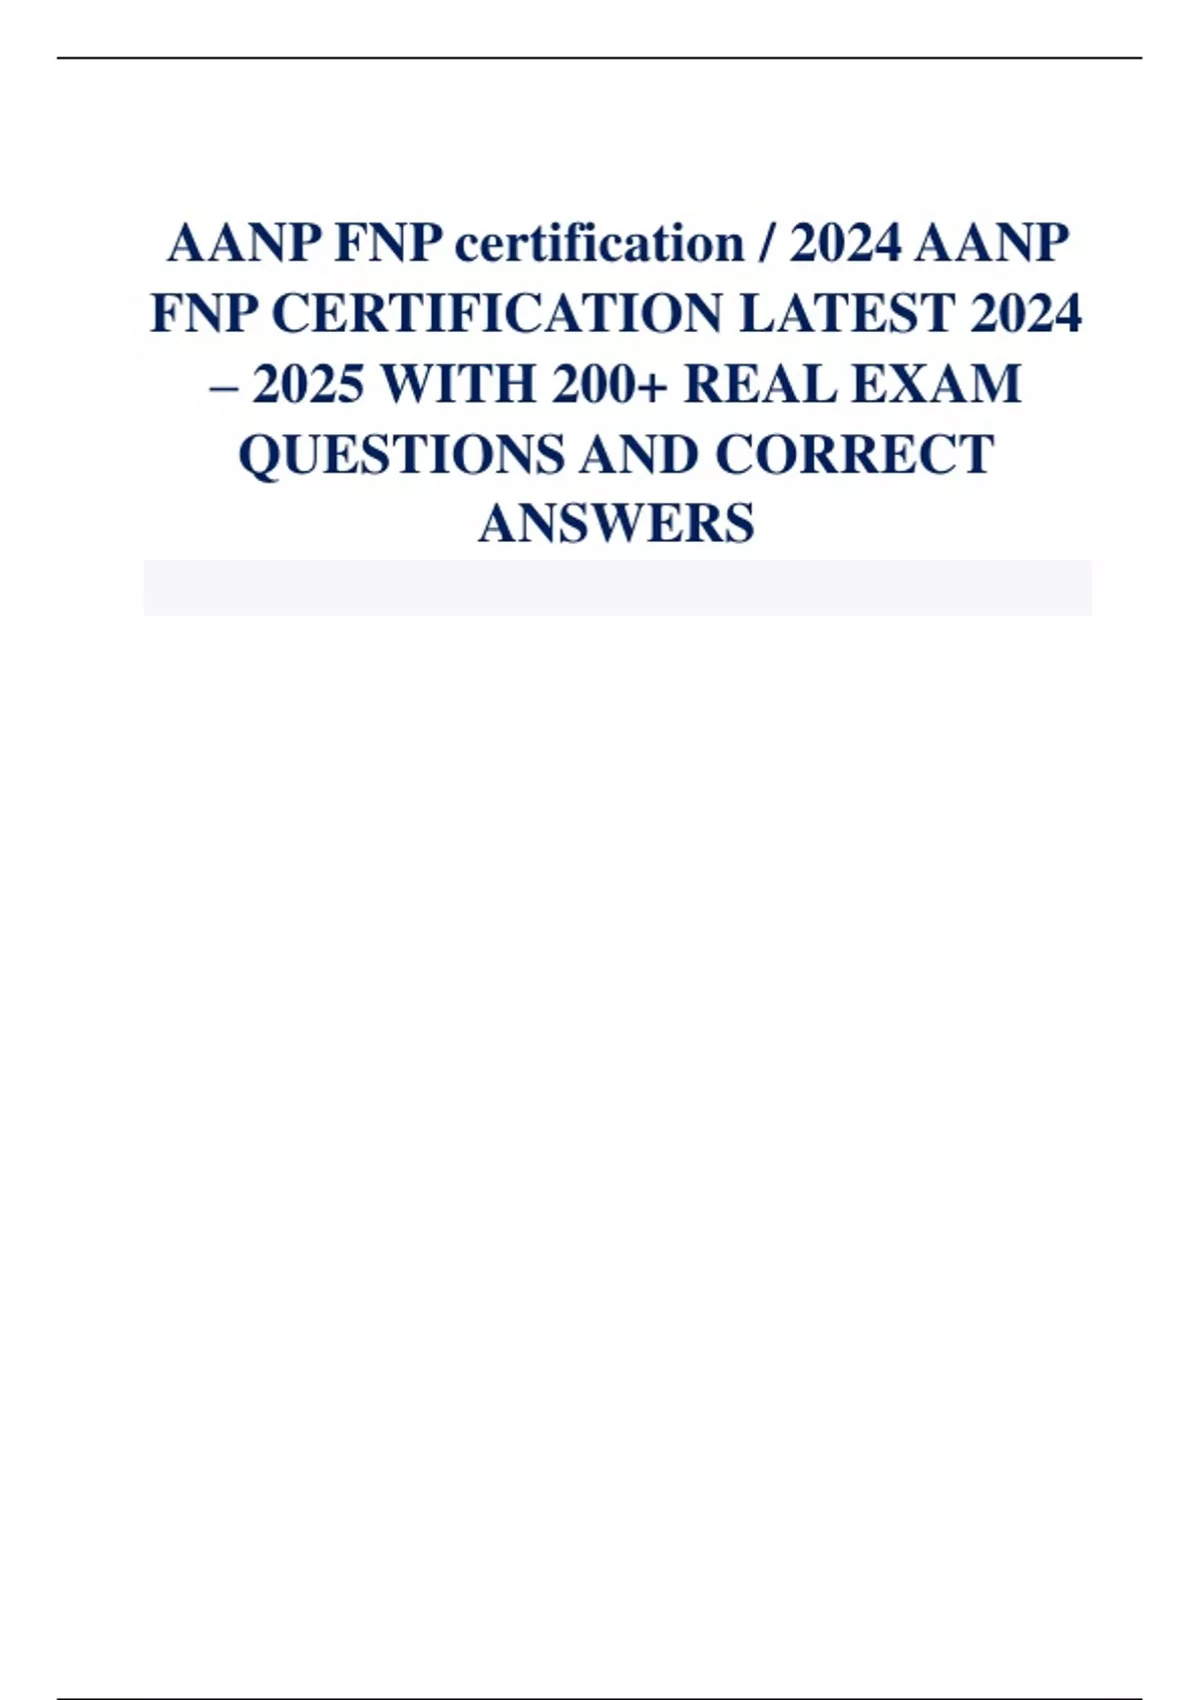 AANP FNP certification / 2024 AANP FNP CERTIFICATION LATEST 2024 2025